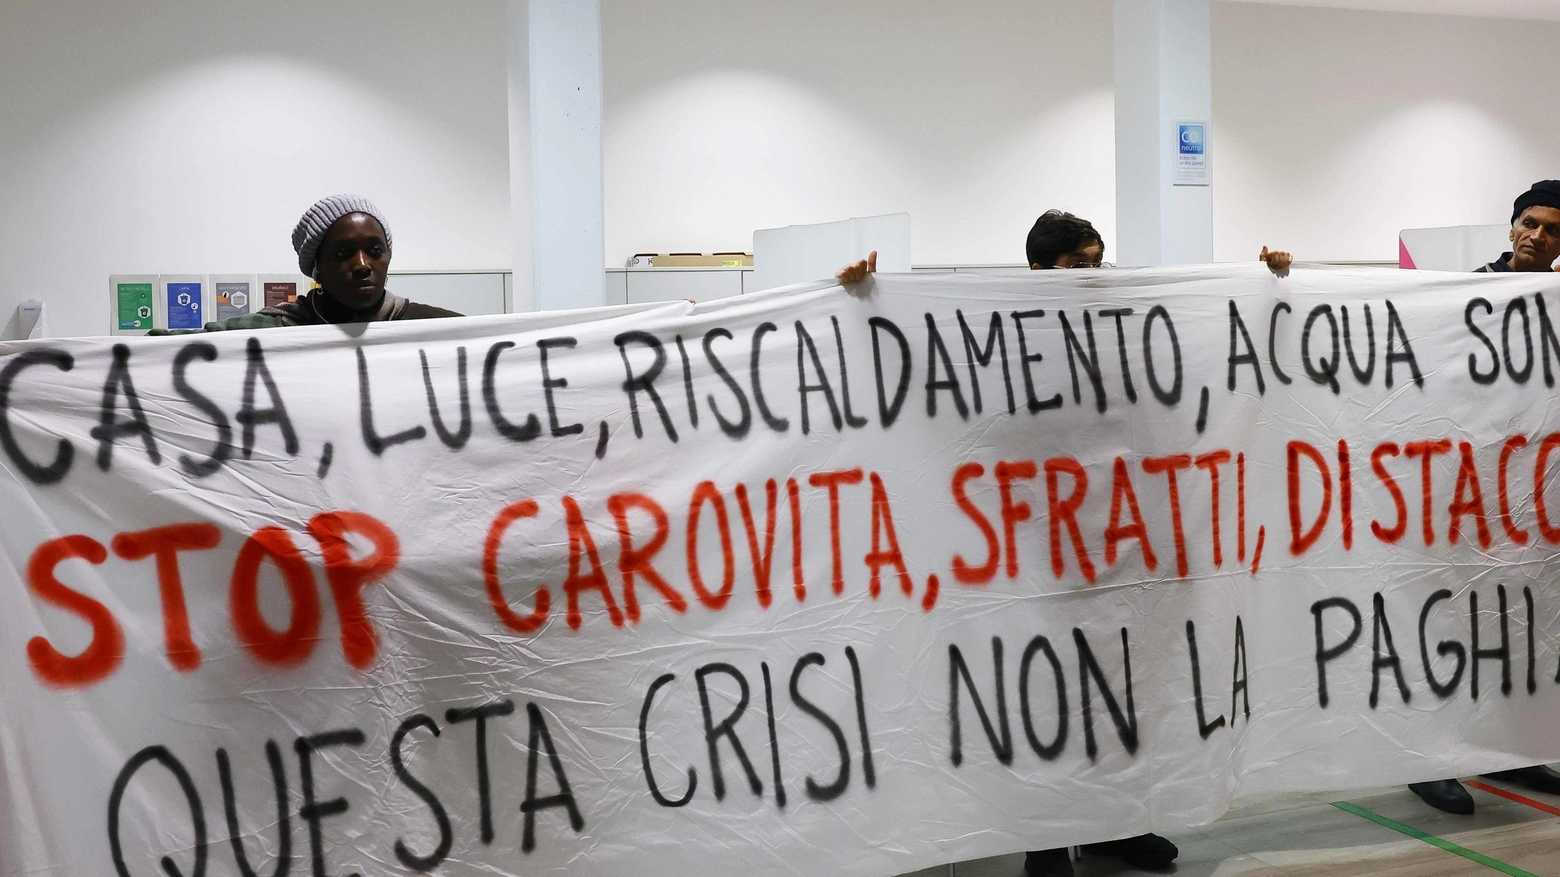 La protesta dell'associazione inquilini nella sede Enel a Brescia